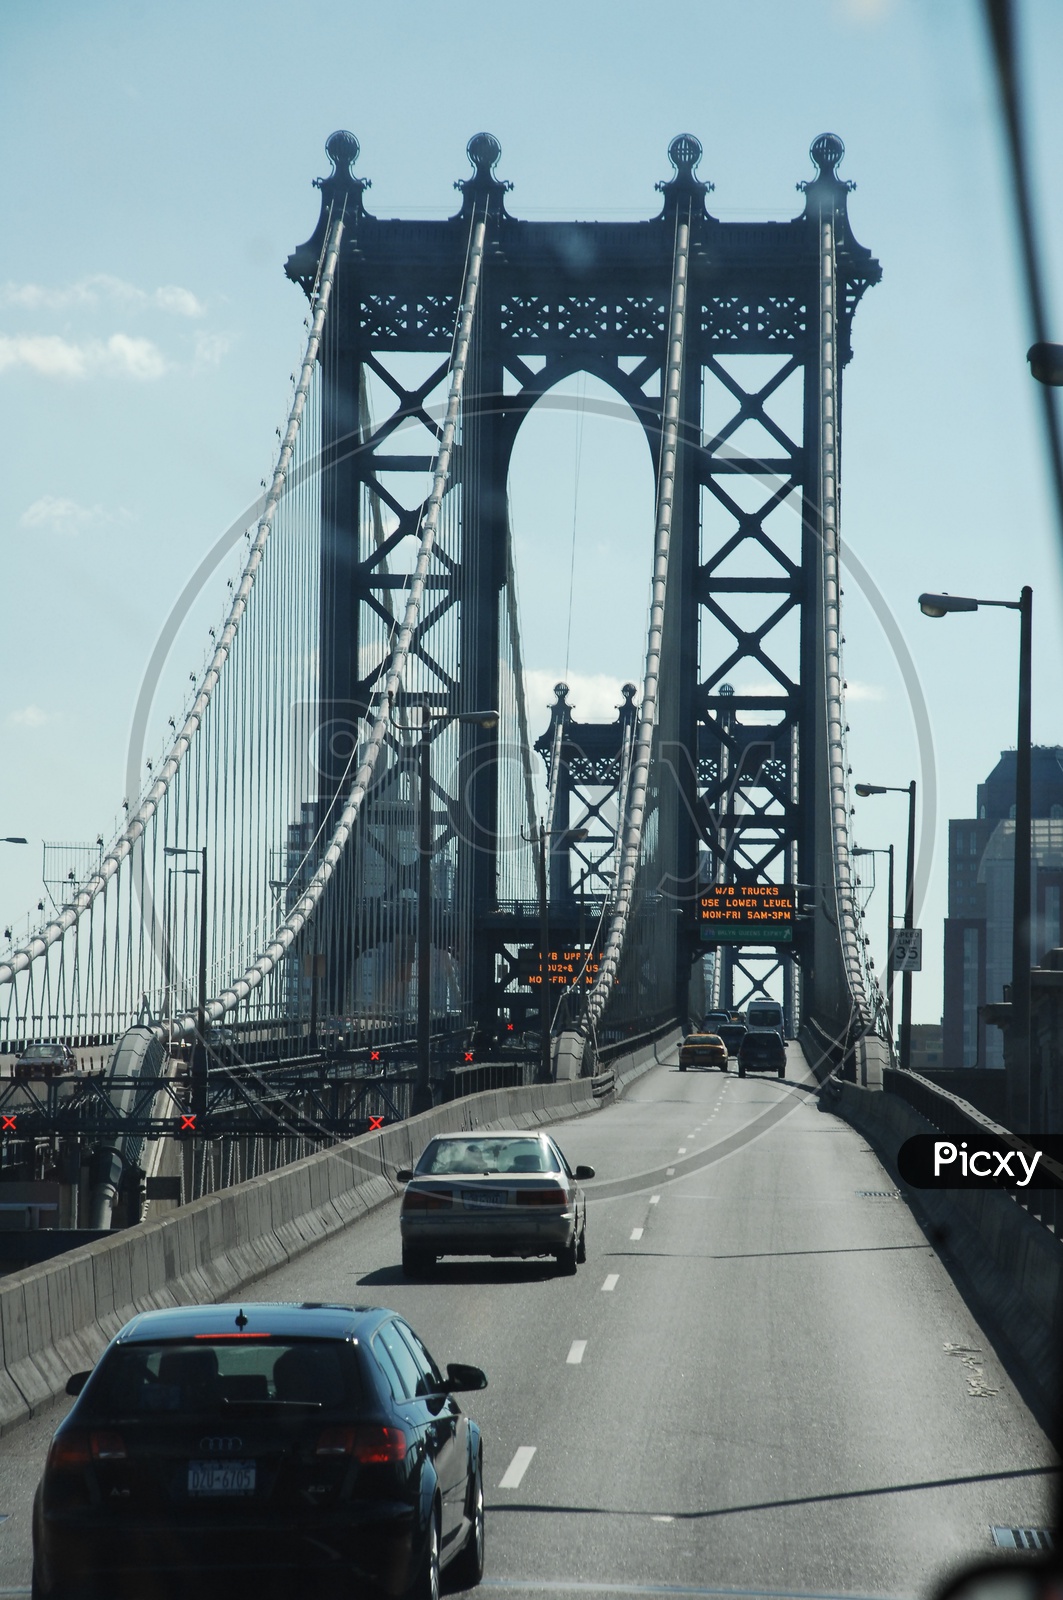 Beautiful view of Manhattan Bridge in New York City